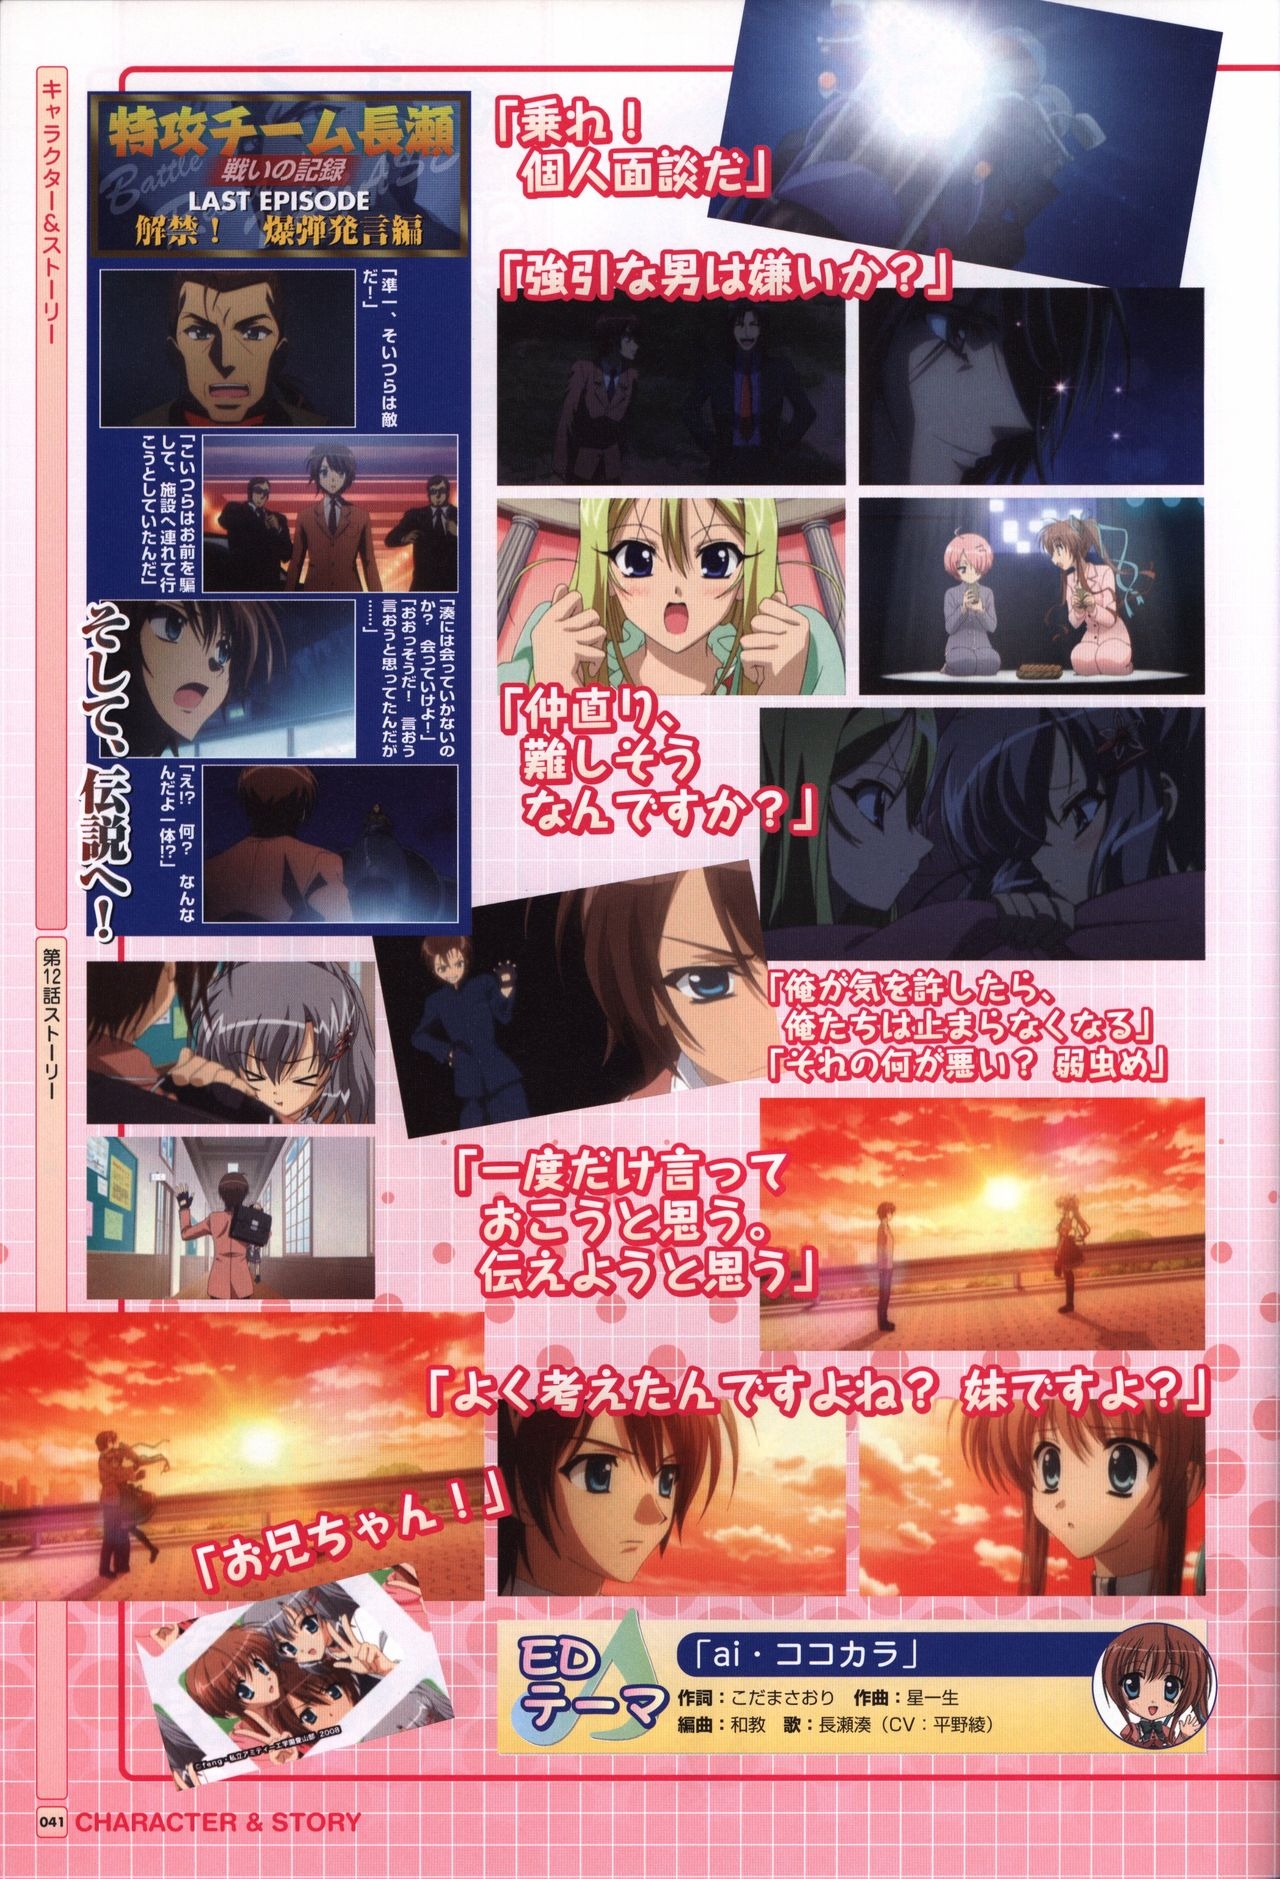 TV ANIME Akaneiro ni Somaru Saka Visual Guide Book 41